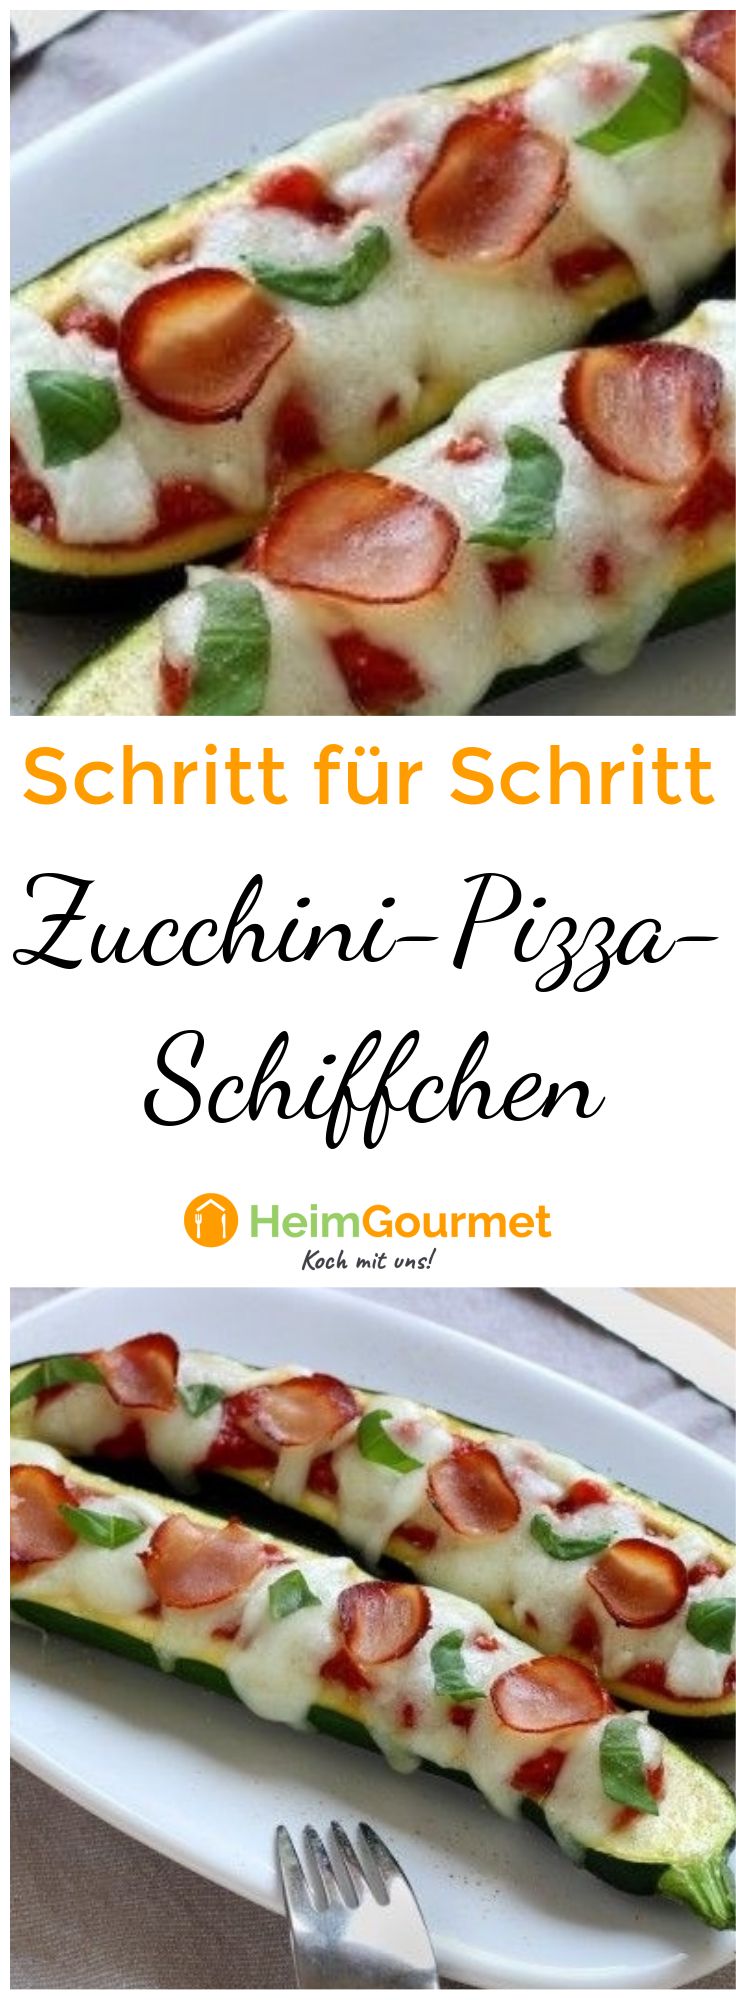 Step by Step zu leckeren Zucchini-Pizza-Schiffchen